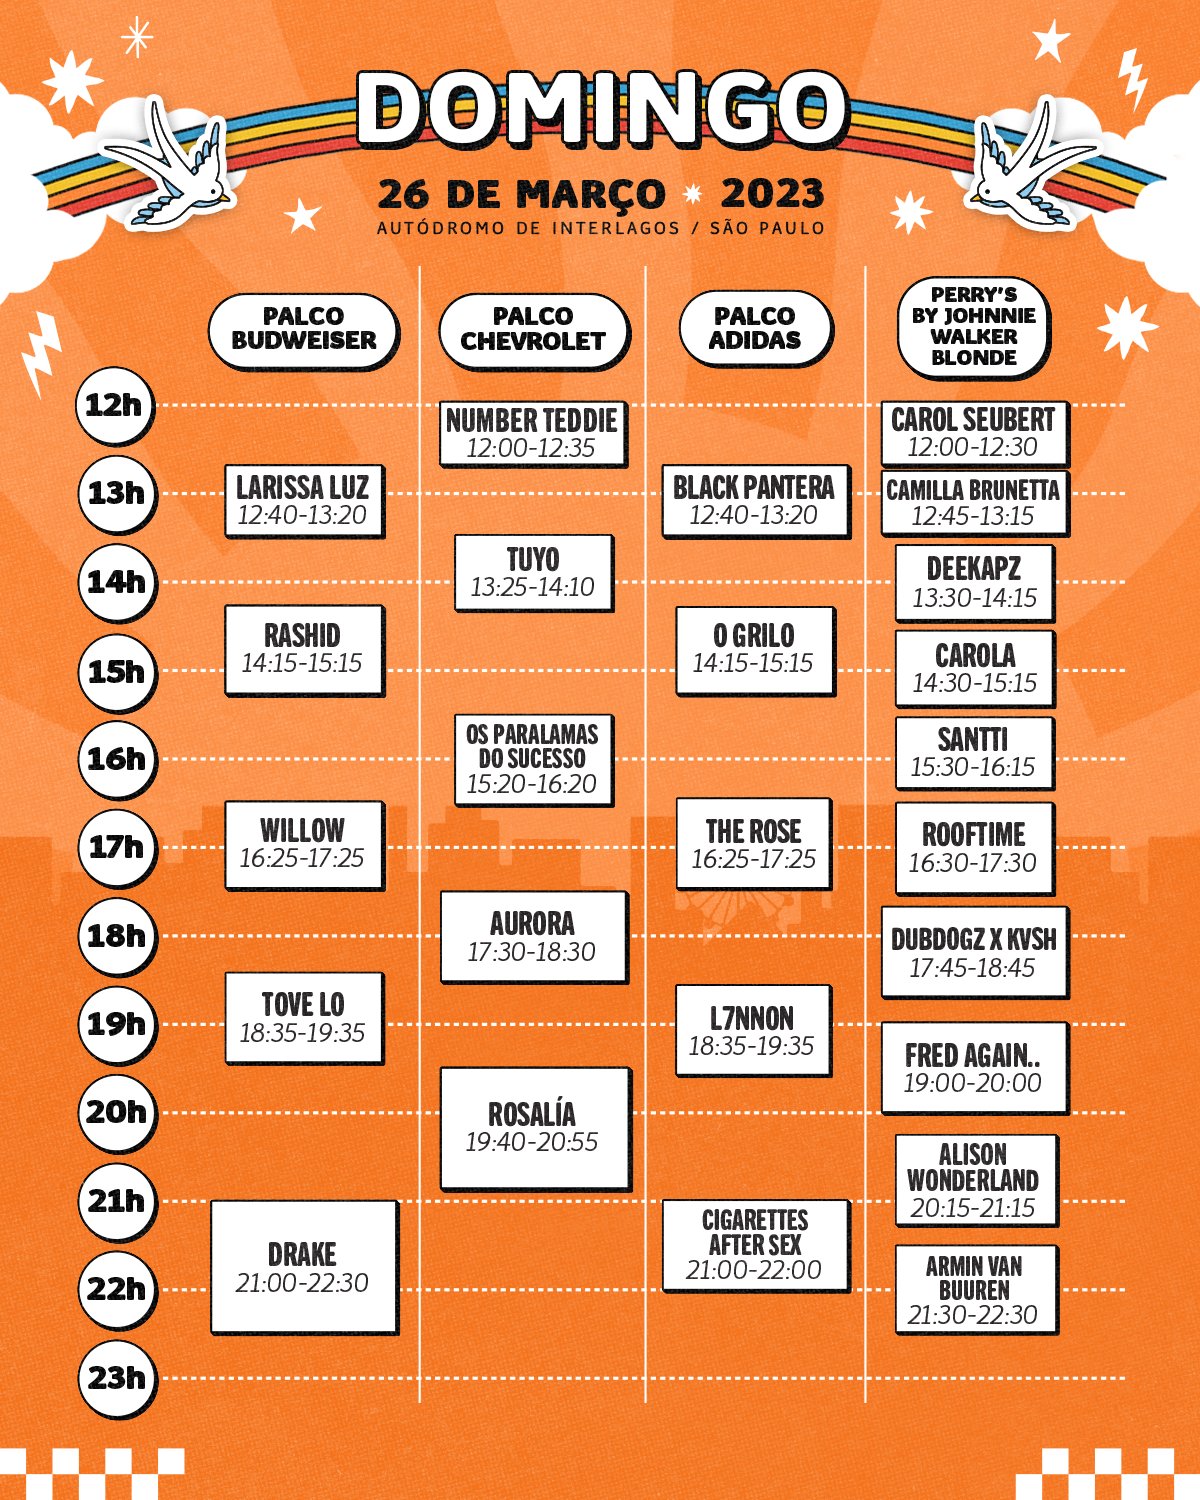 Horários dos shows do domingo, último dia do Lollapalooza Brasil 2023.